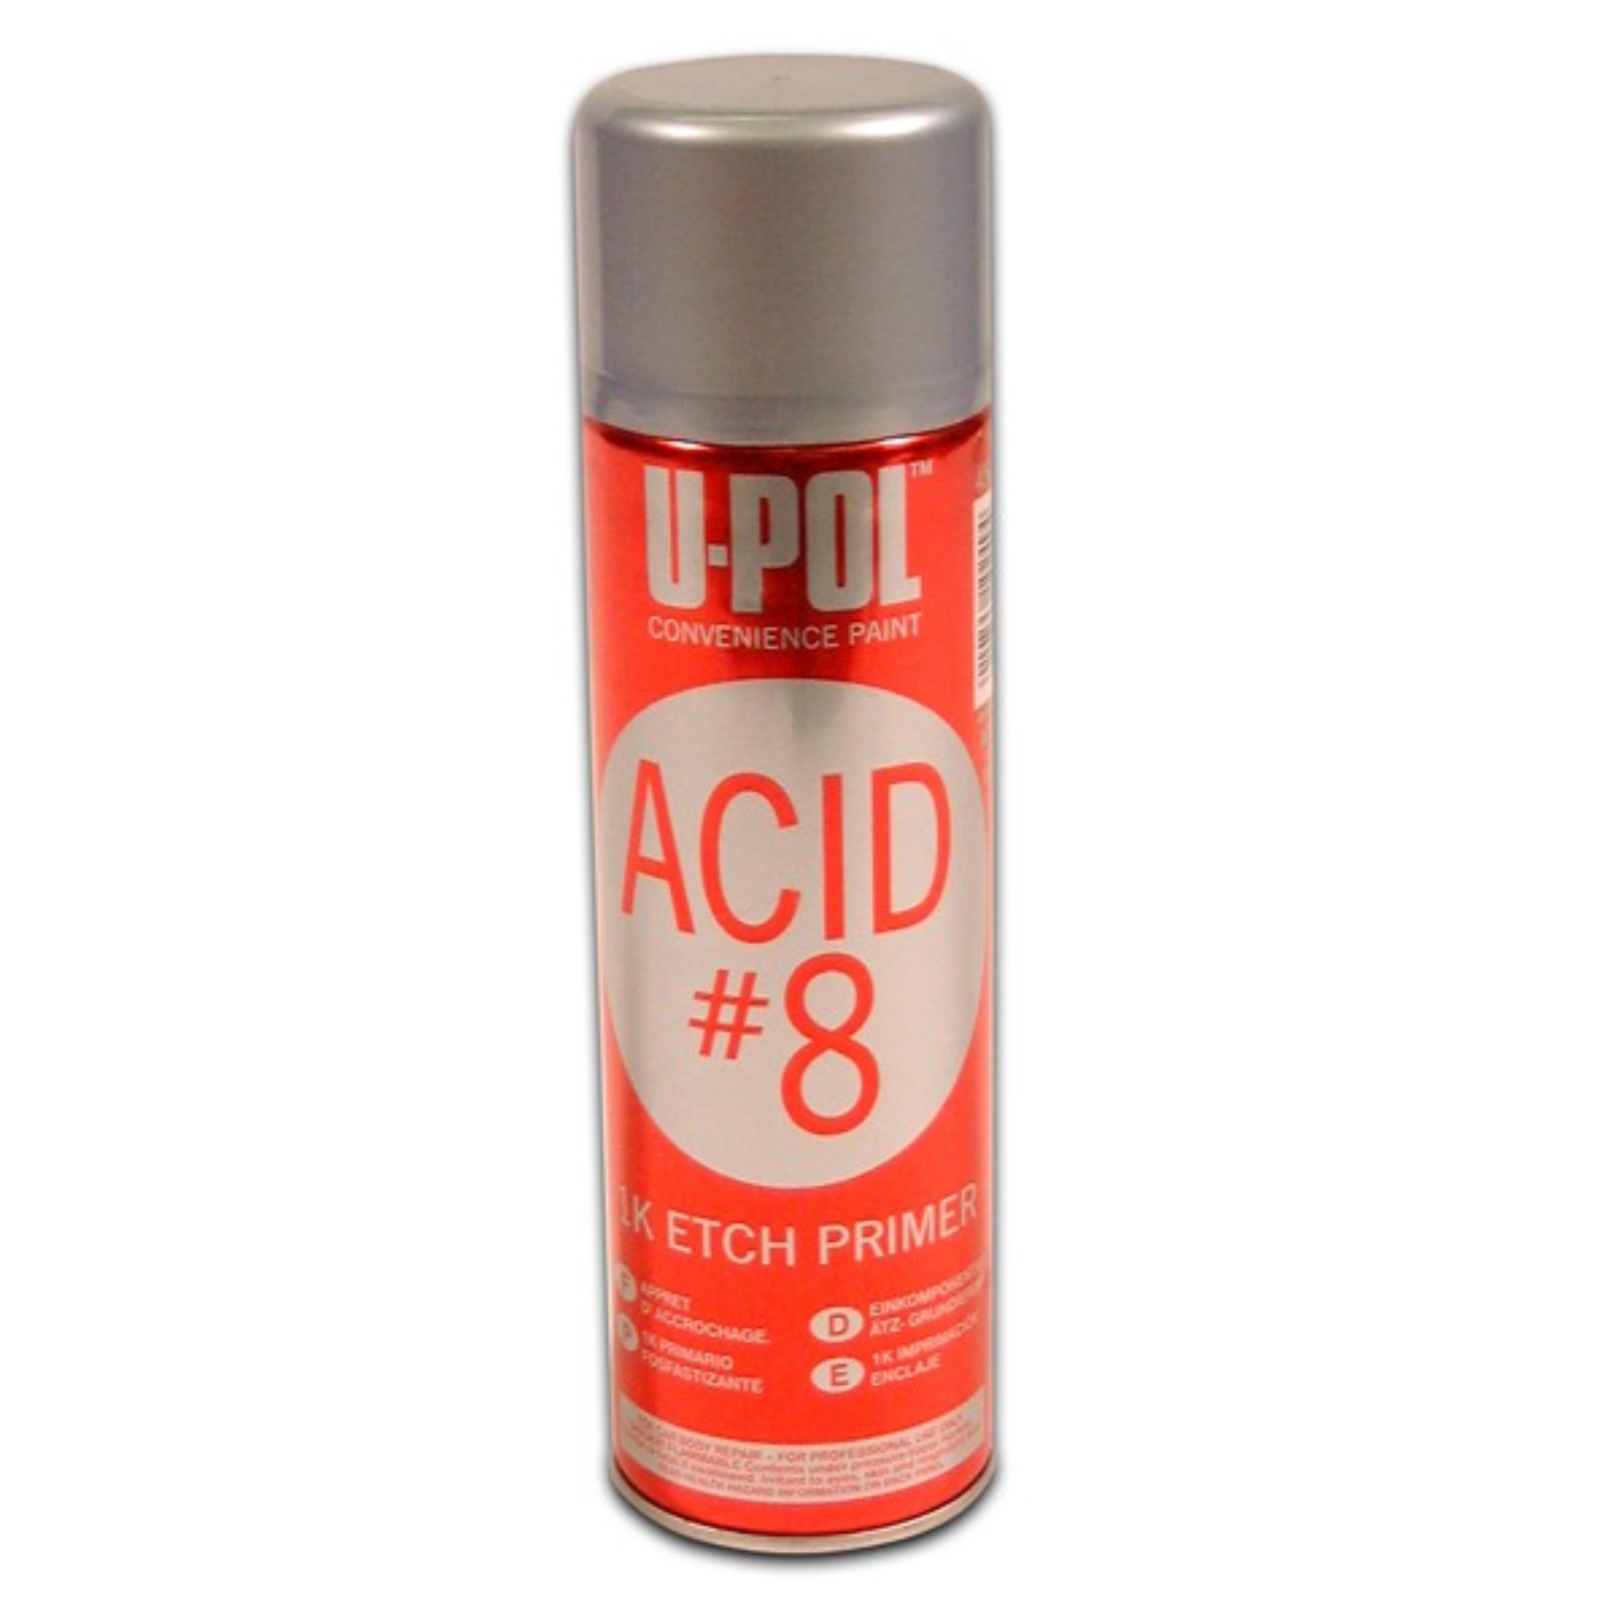 U-Pol Acid #8 Etch Primer - 450ml